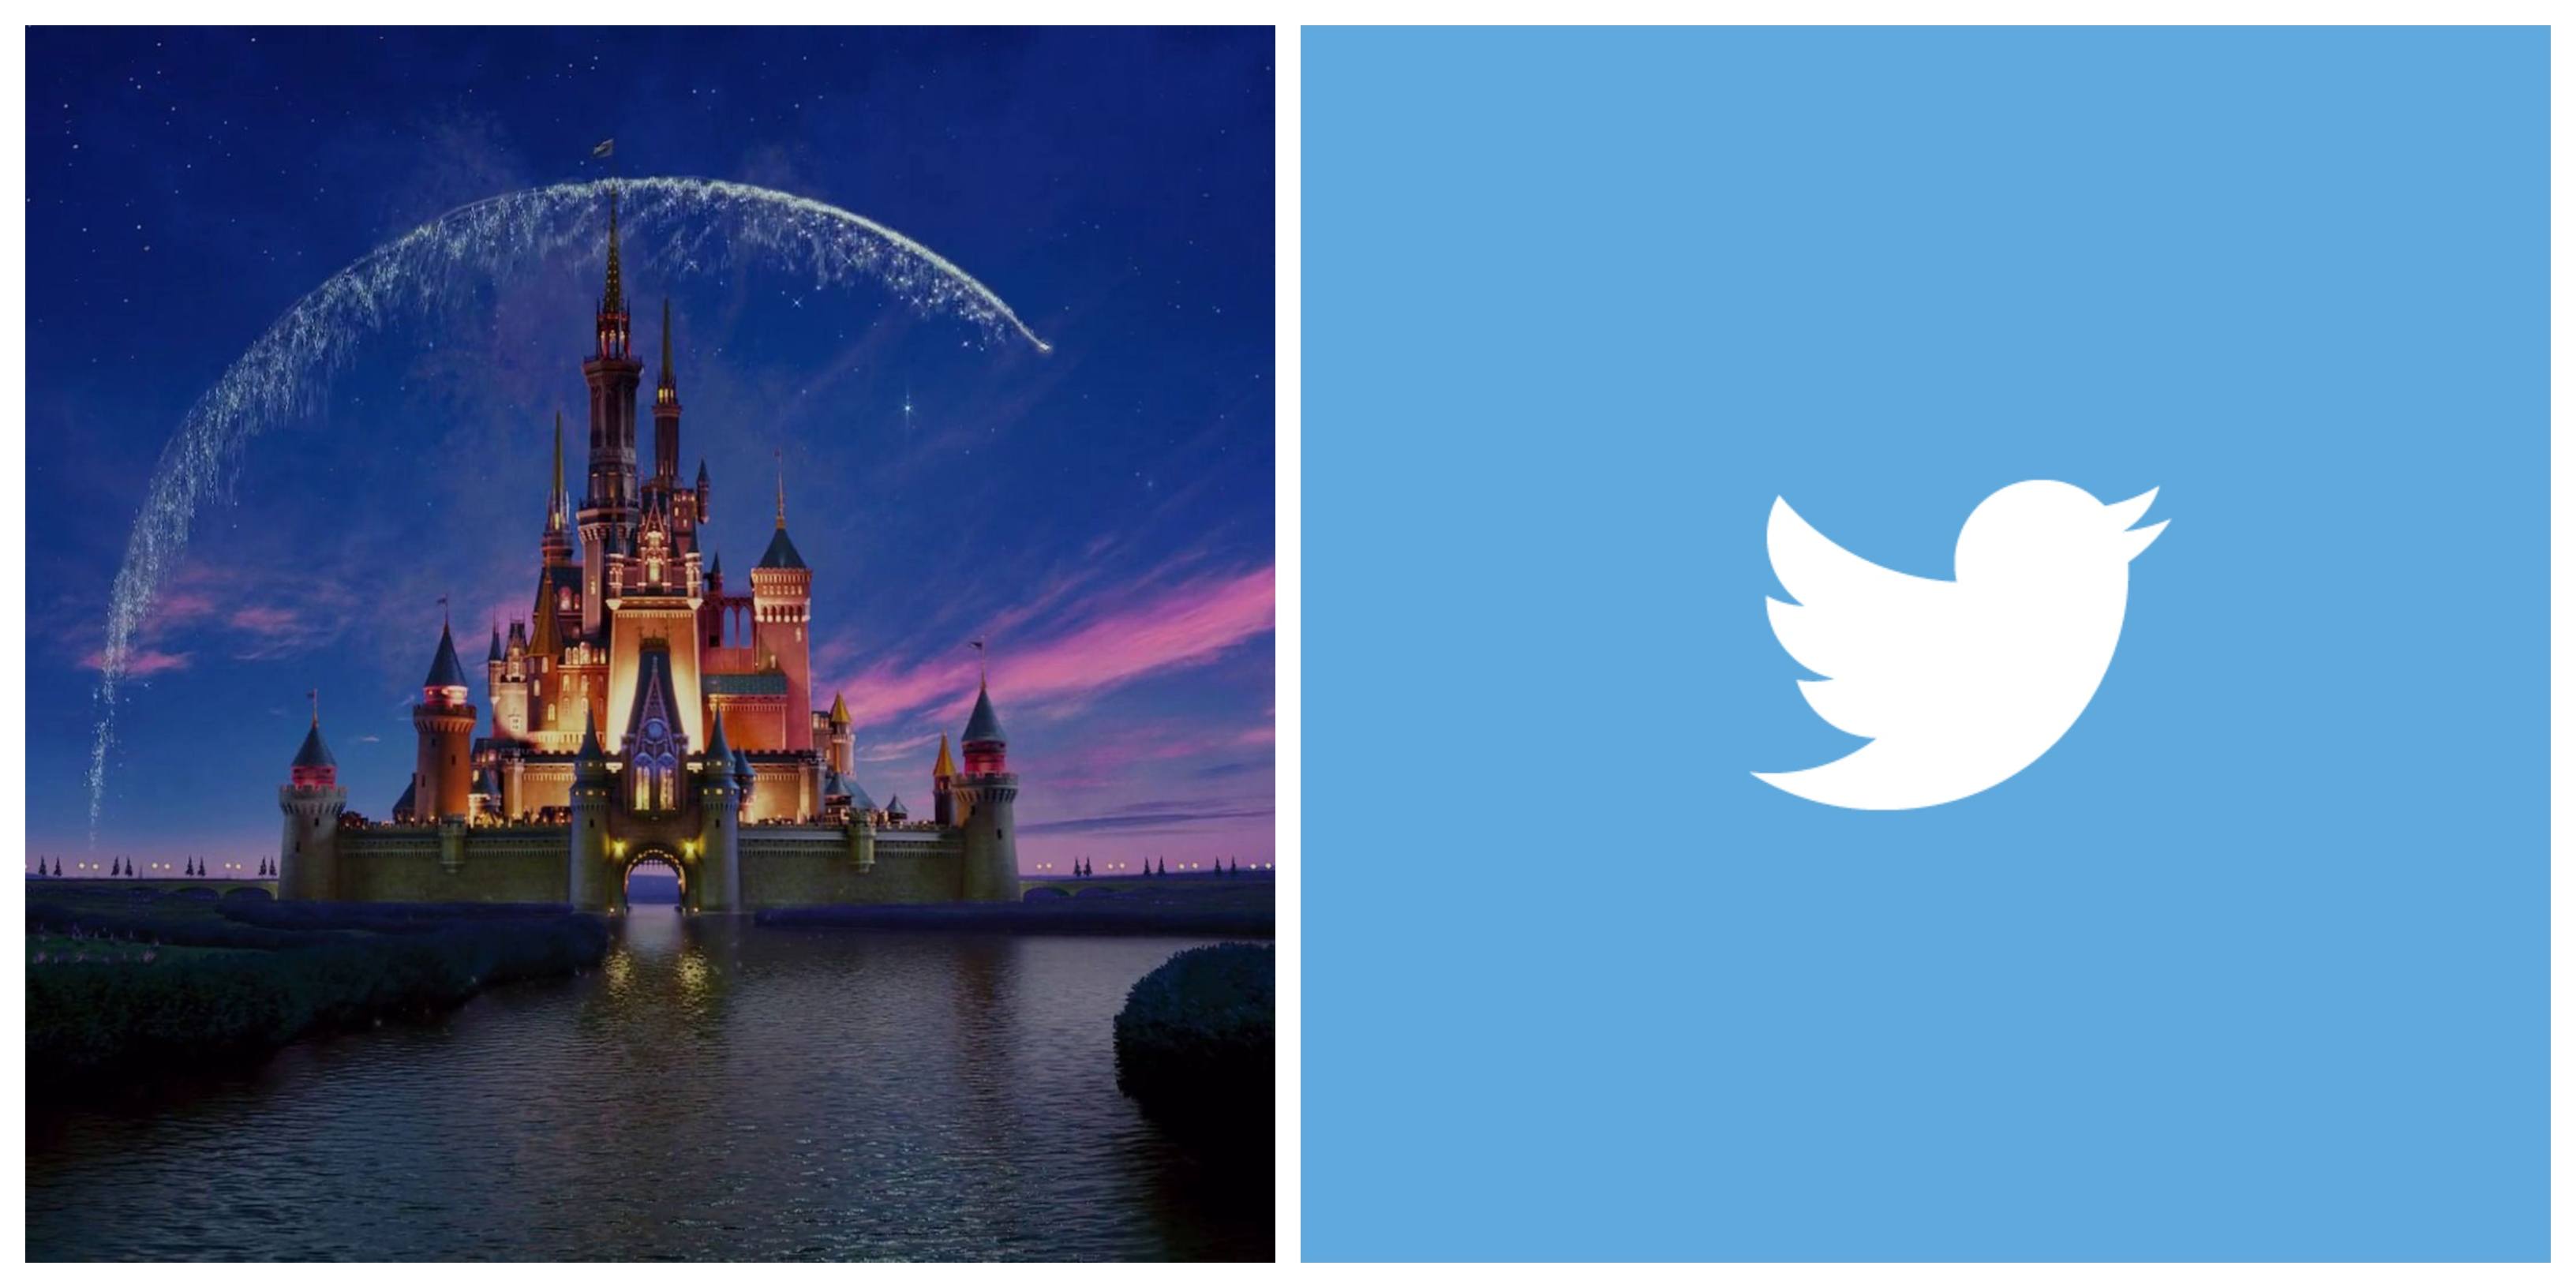 Disney rechazó comprar Twitter porque “la maldad ahí es extraordinaria”